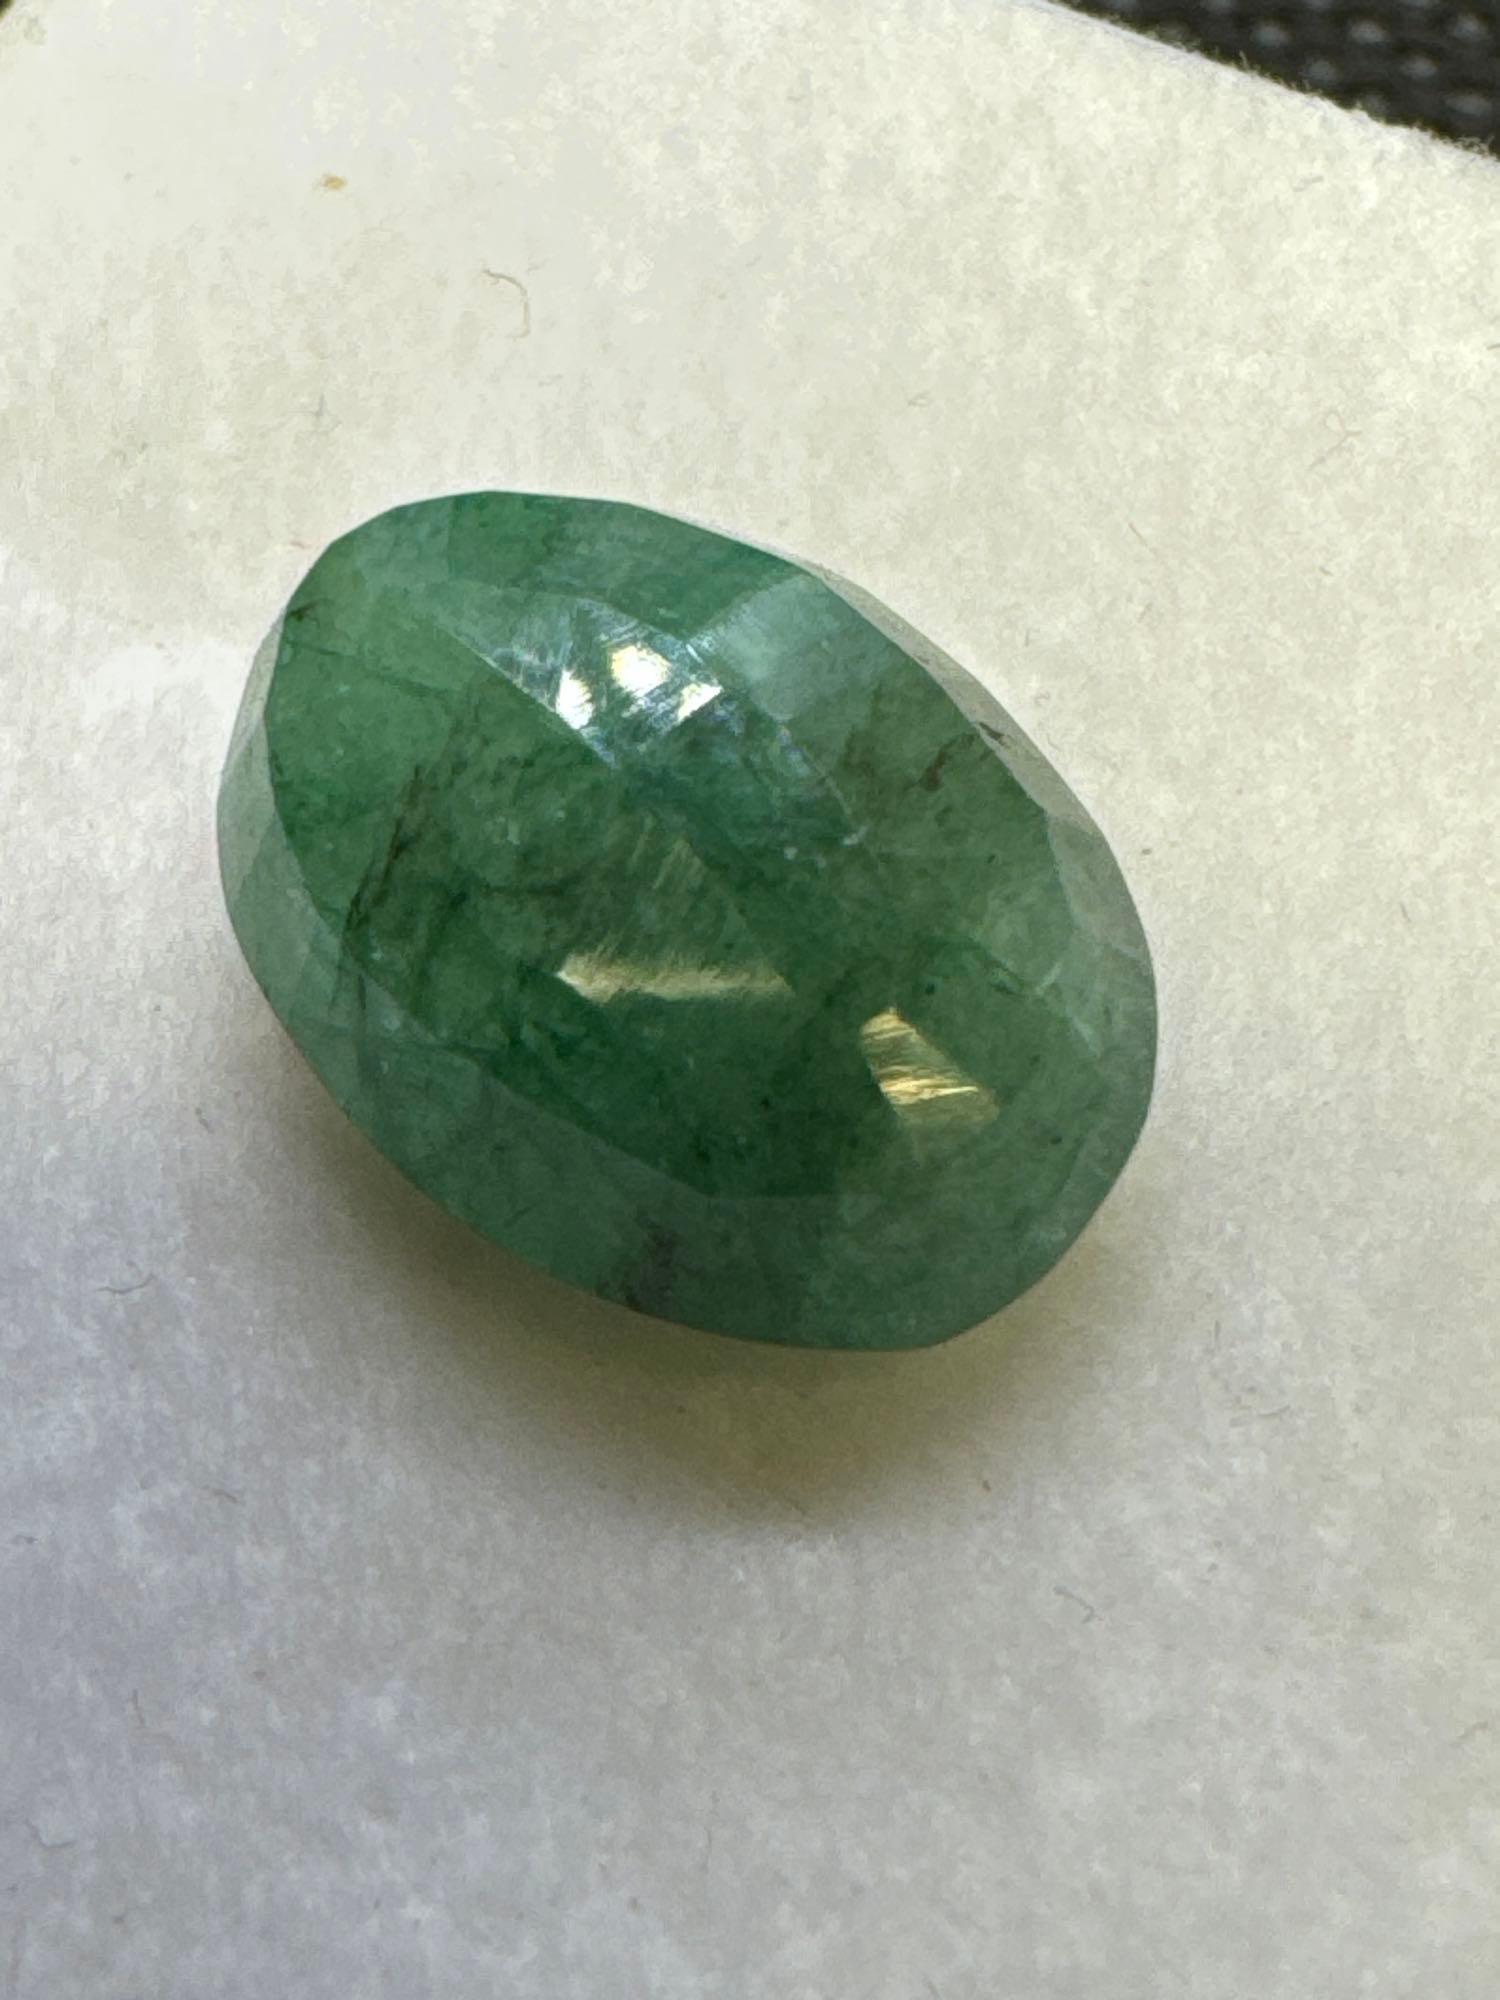 Oval Cut Green Emerald Gemstone 5.60ct